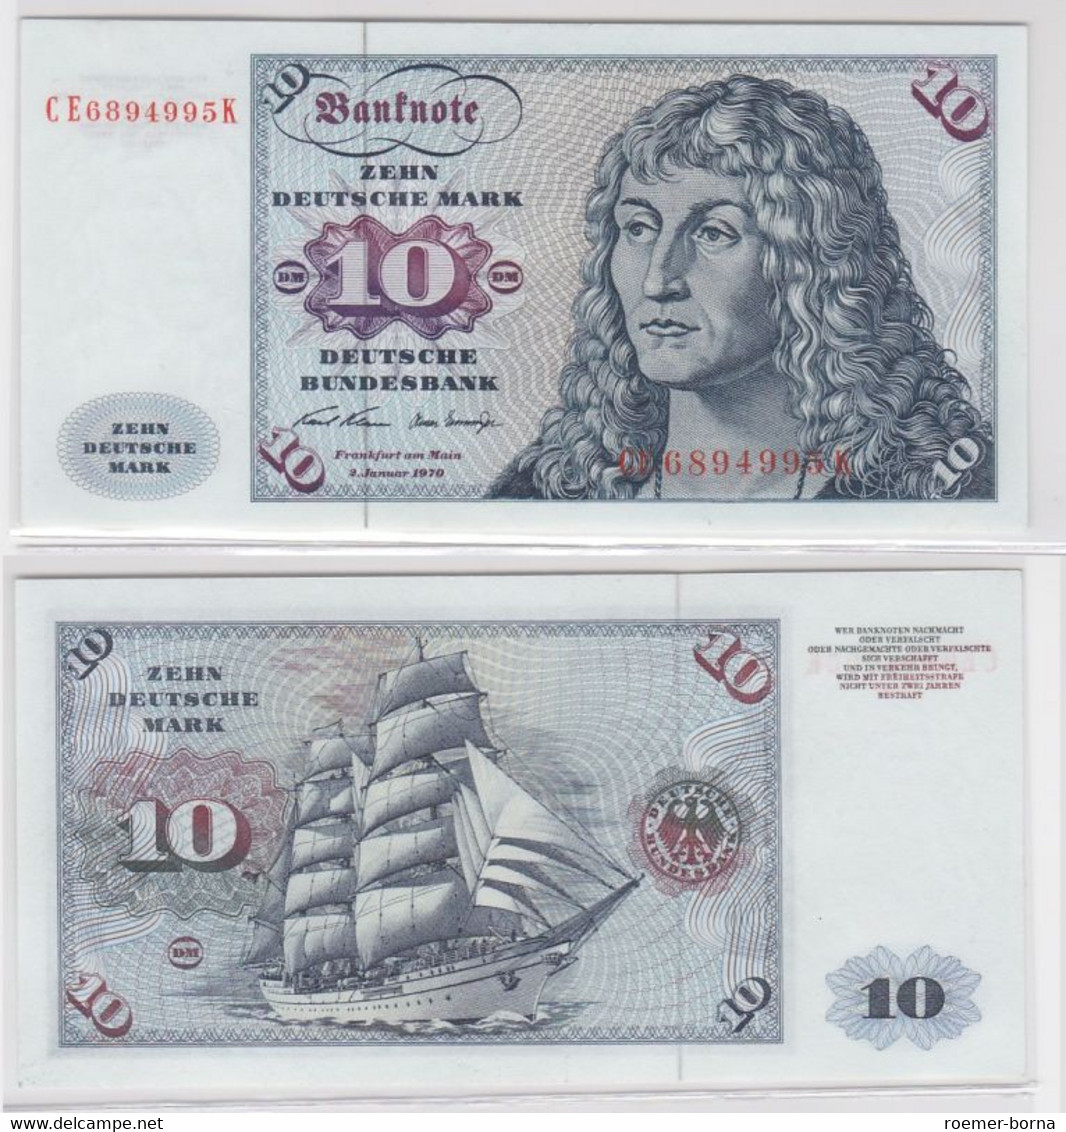 T146732 Banknote 10 DM Deutsche Mark Ro. 270b Schein 2.Jan. 1970 KN CE 6894995 K - 10 Deutsche Mark